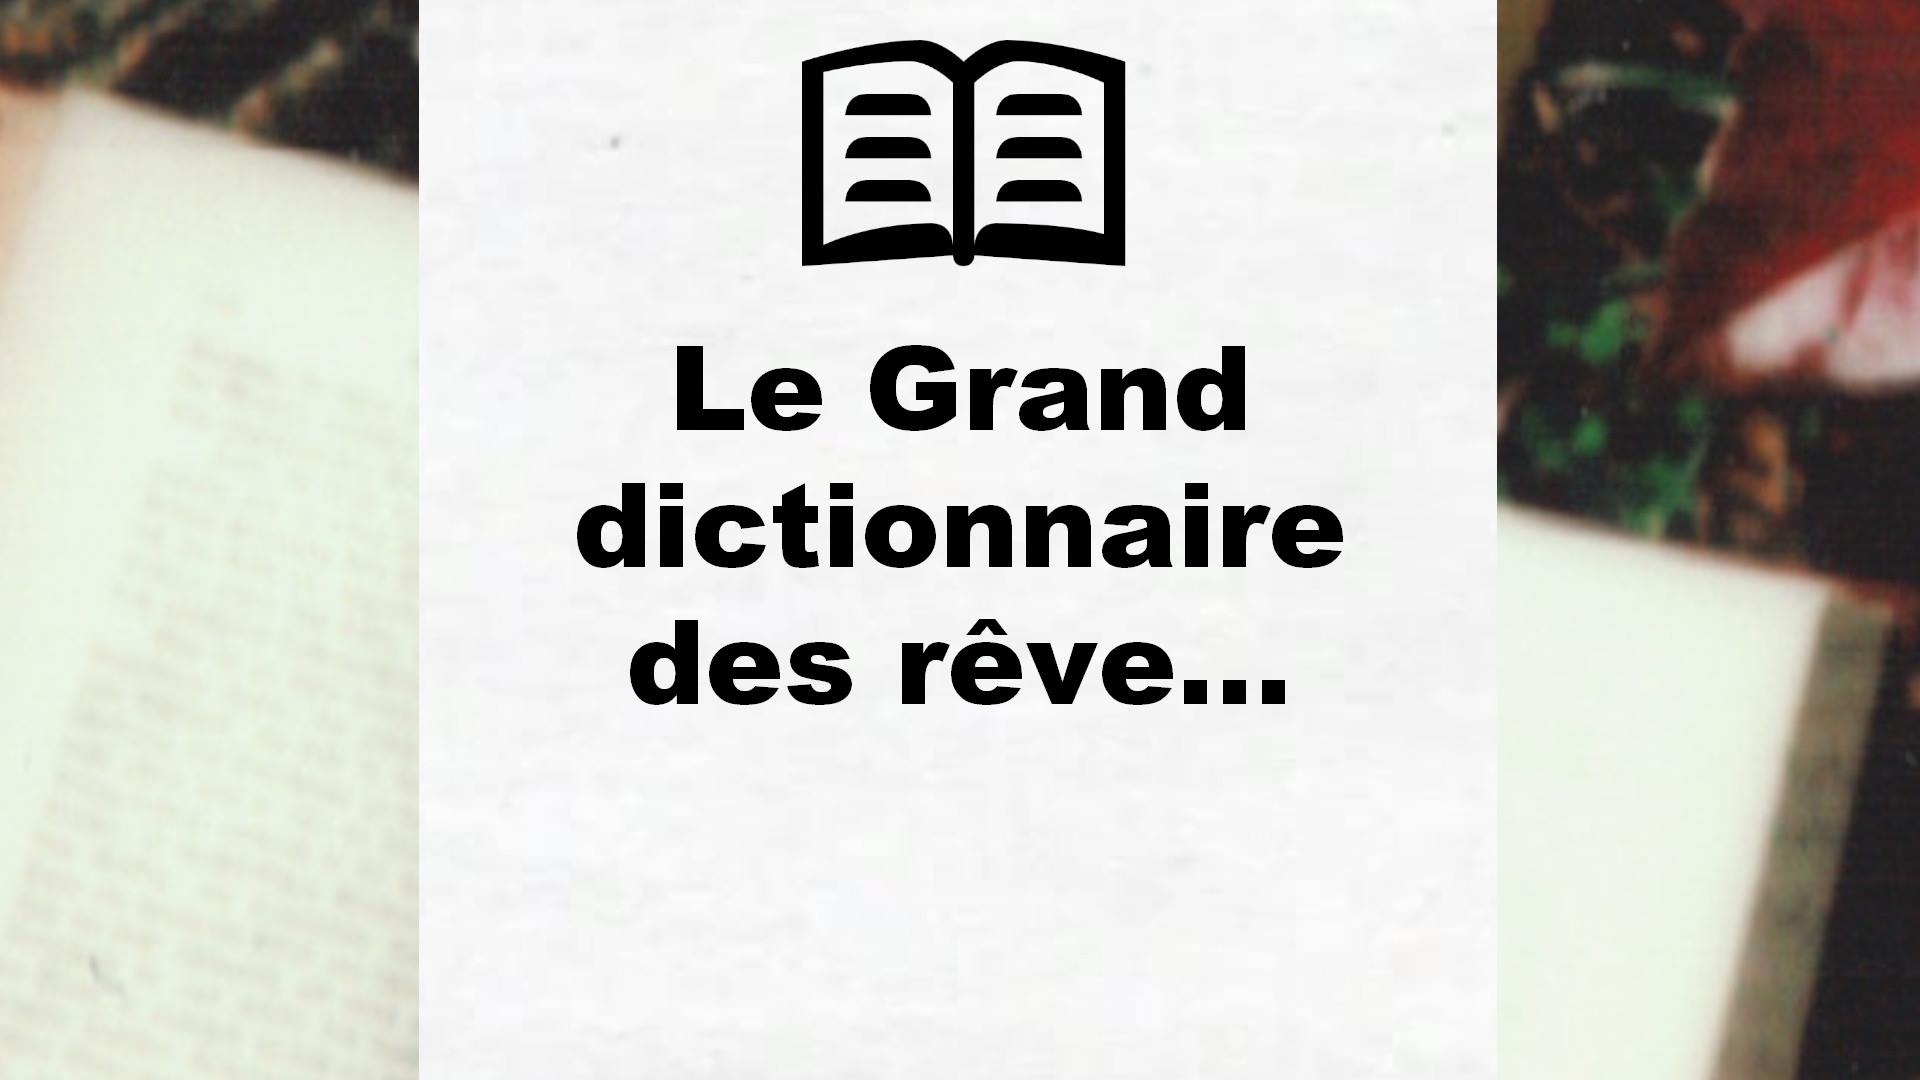 Le Grand dictionnaire des rêve… – Critique